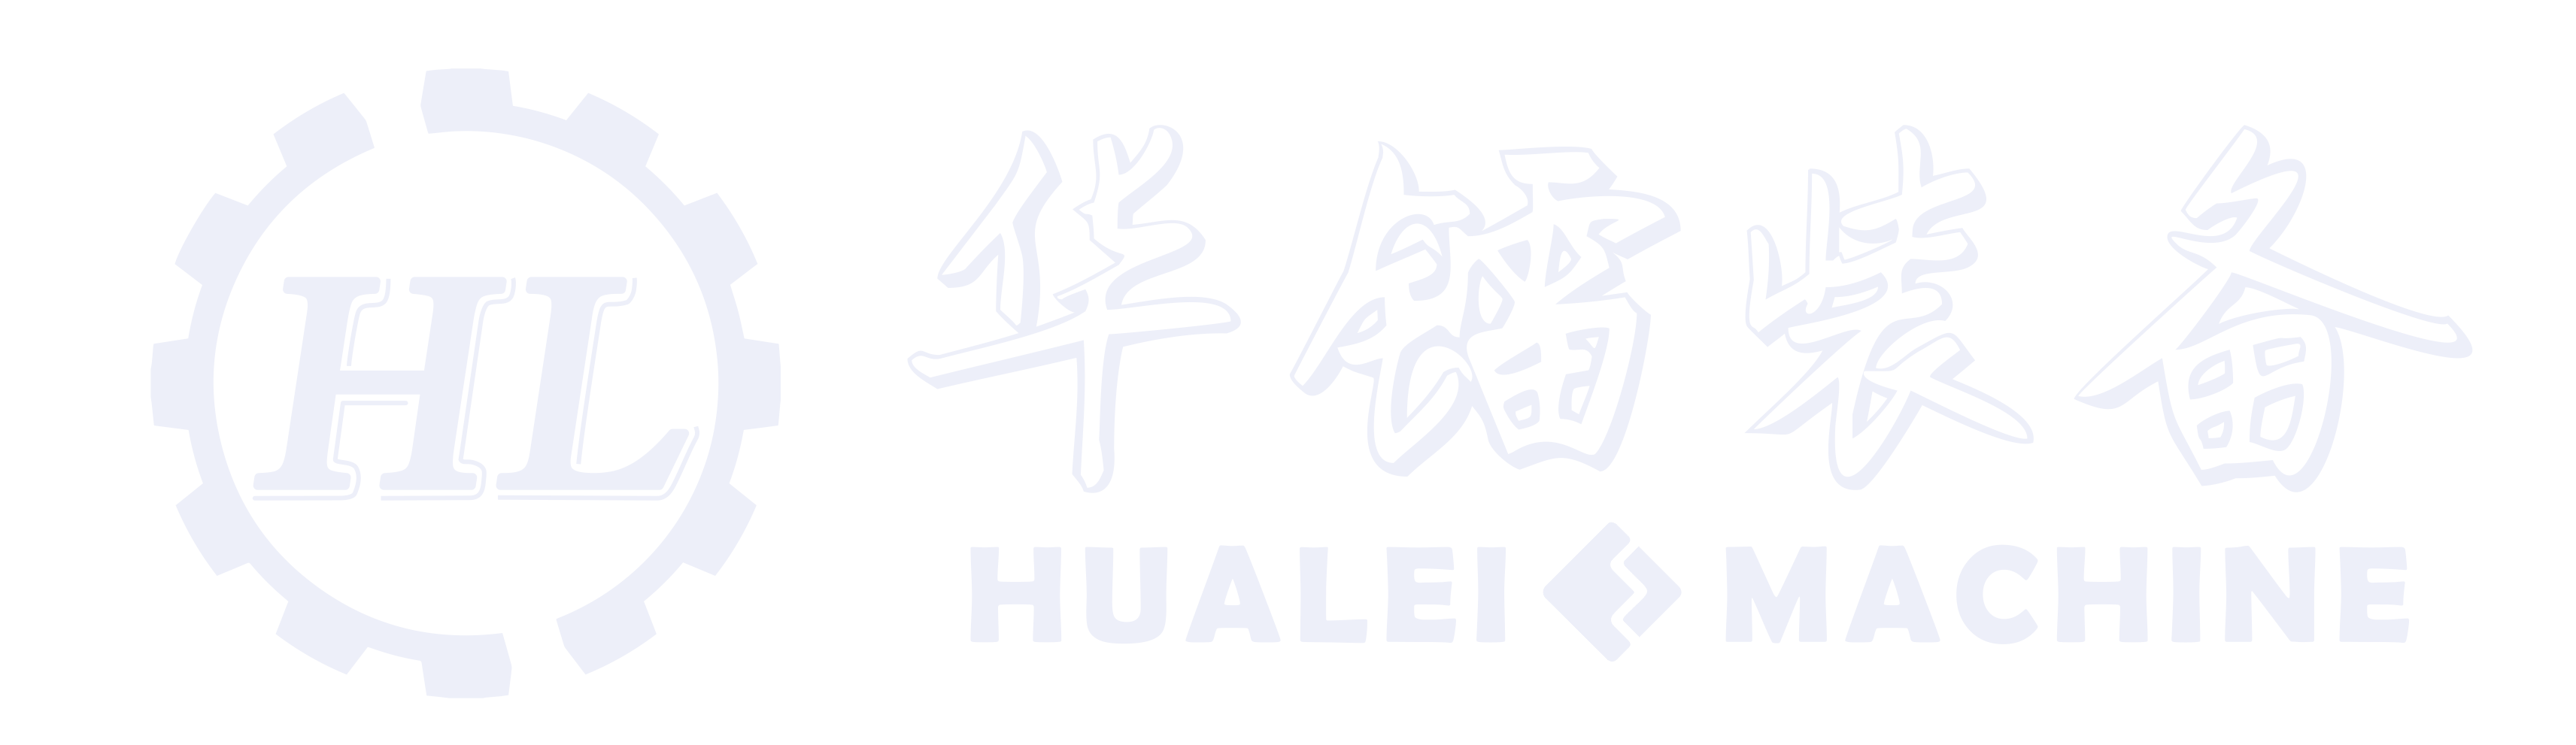 华镭装备厂家logo